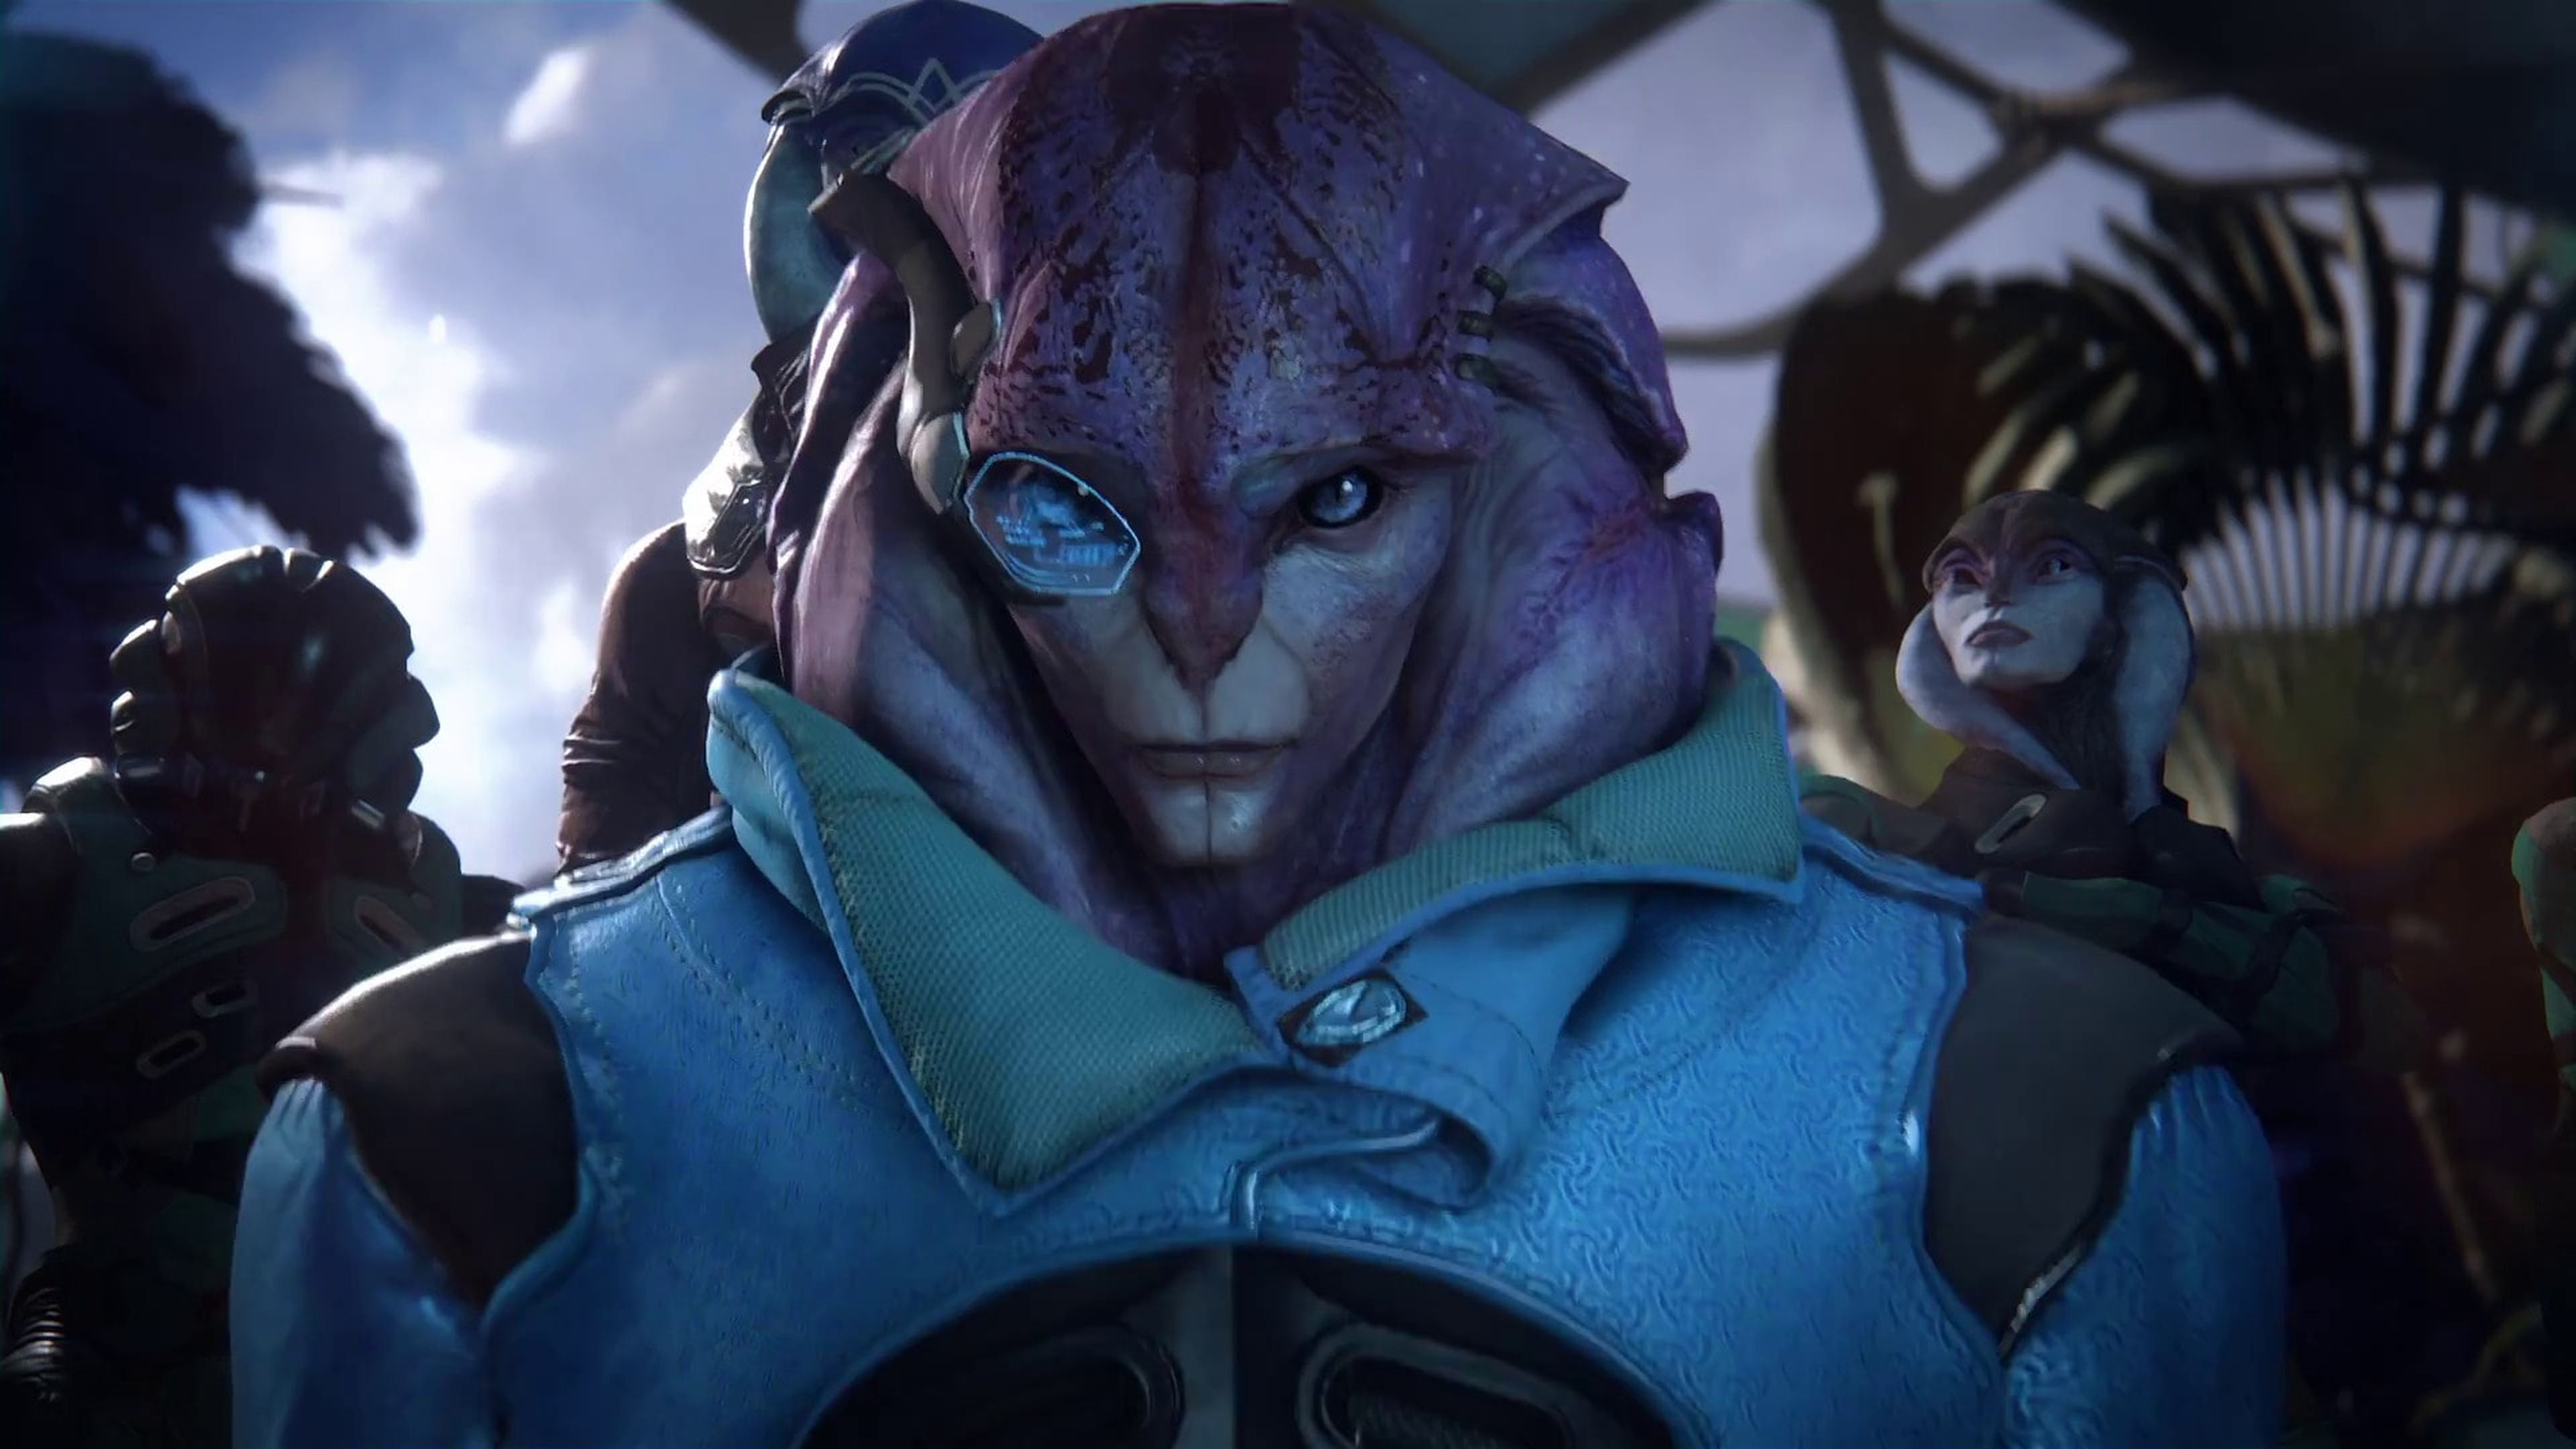 Mass Effect Andromeda - Nuevas imágenes